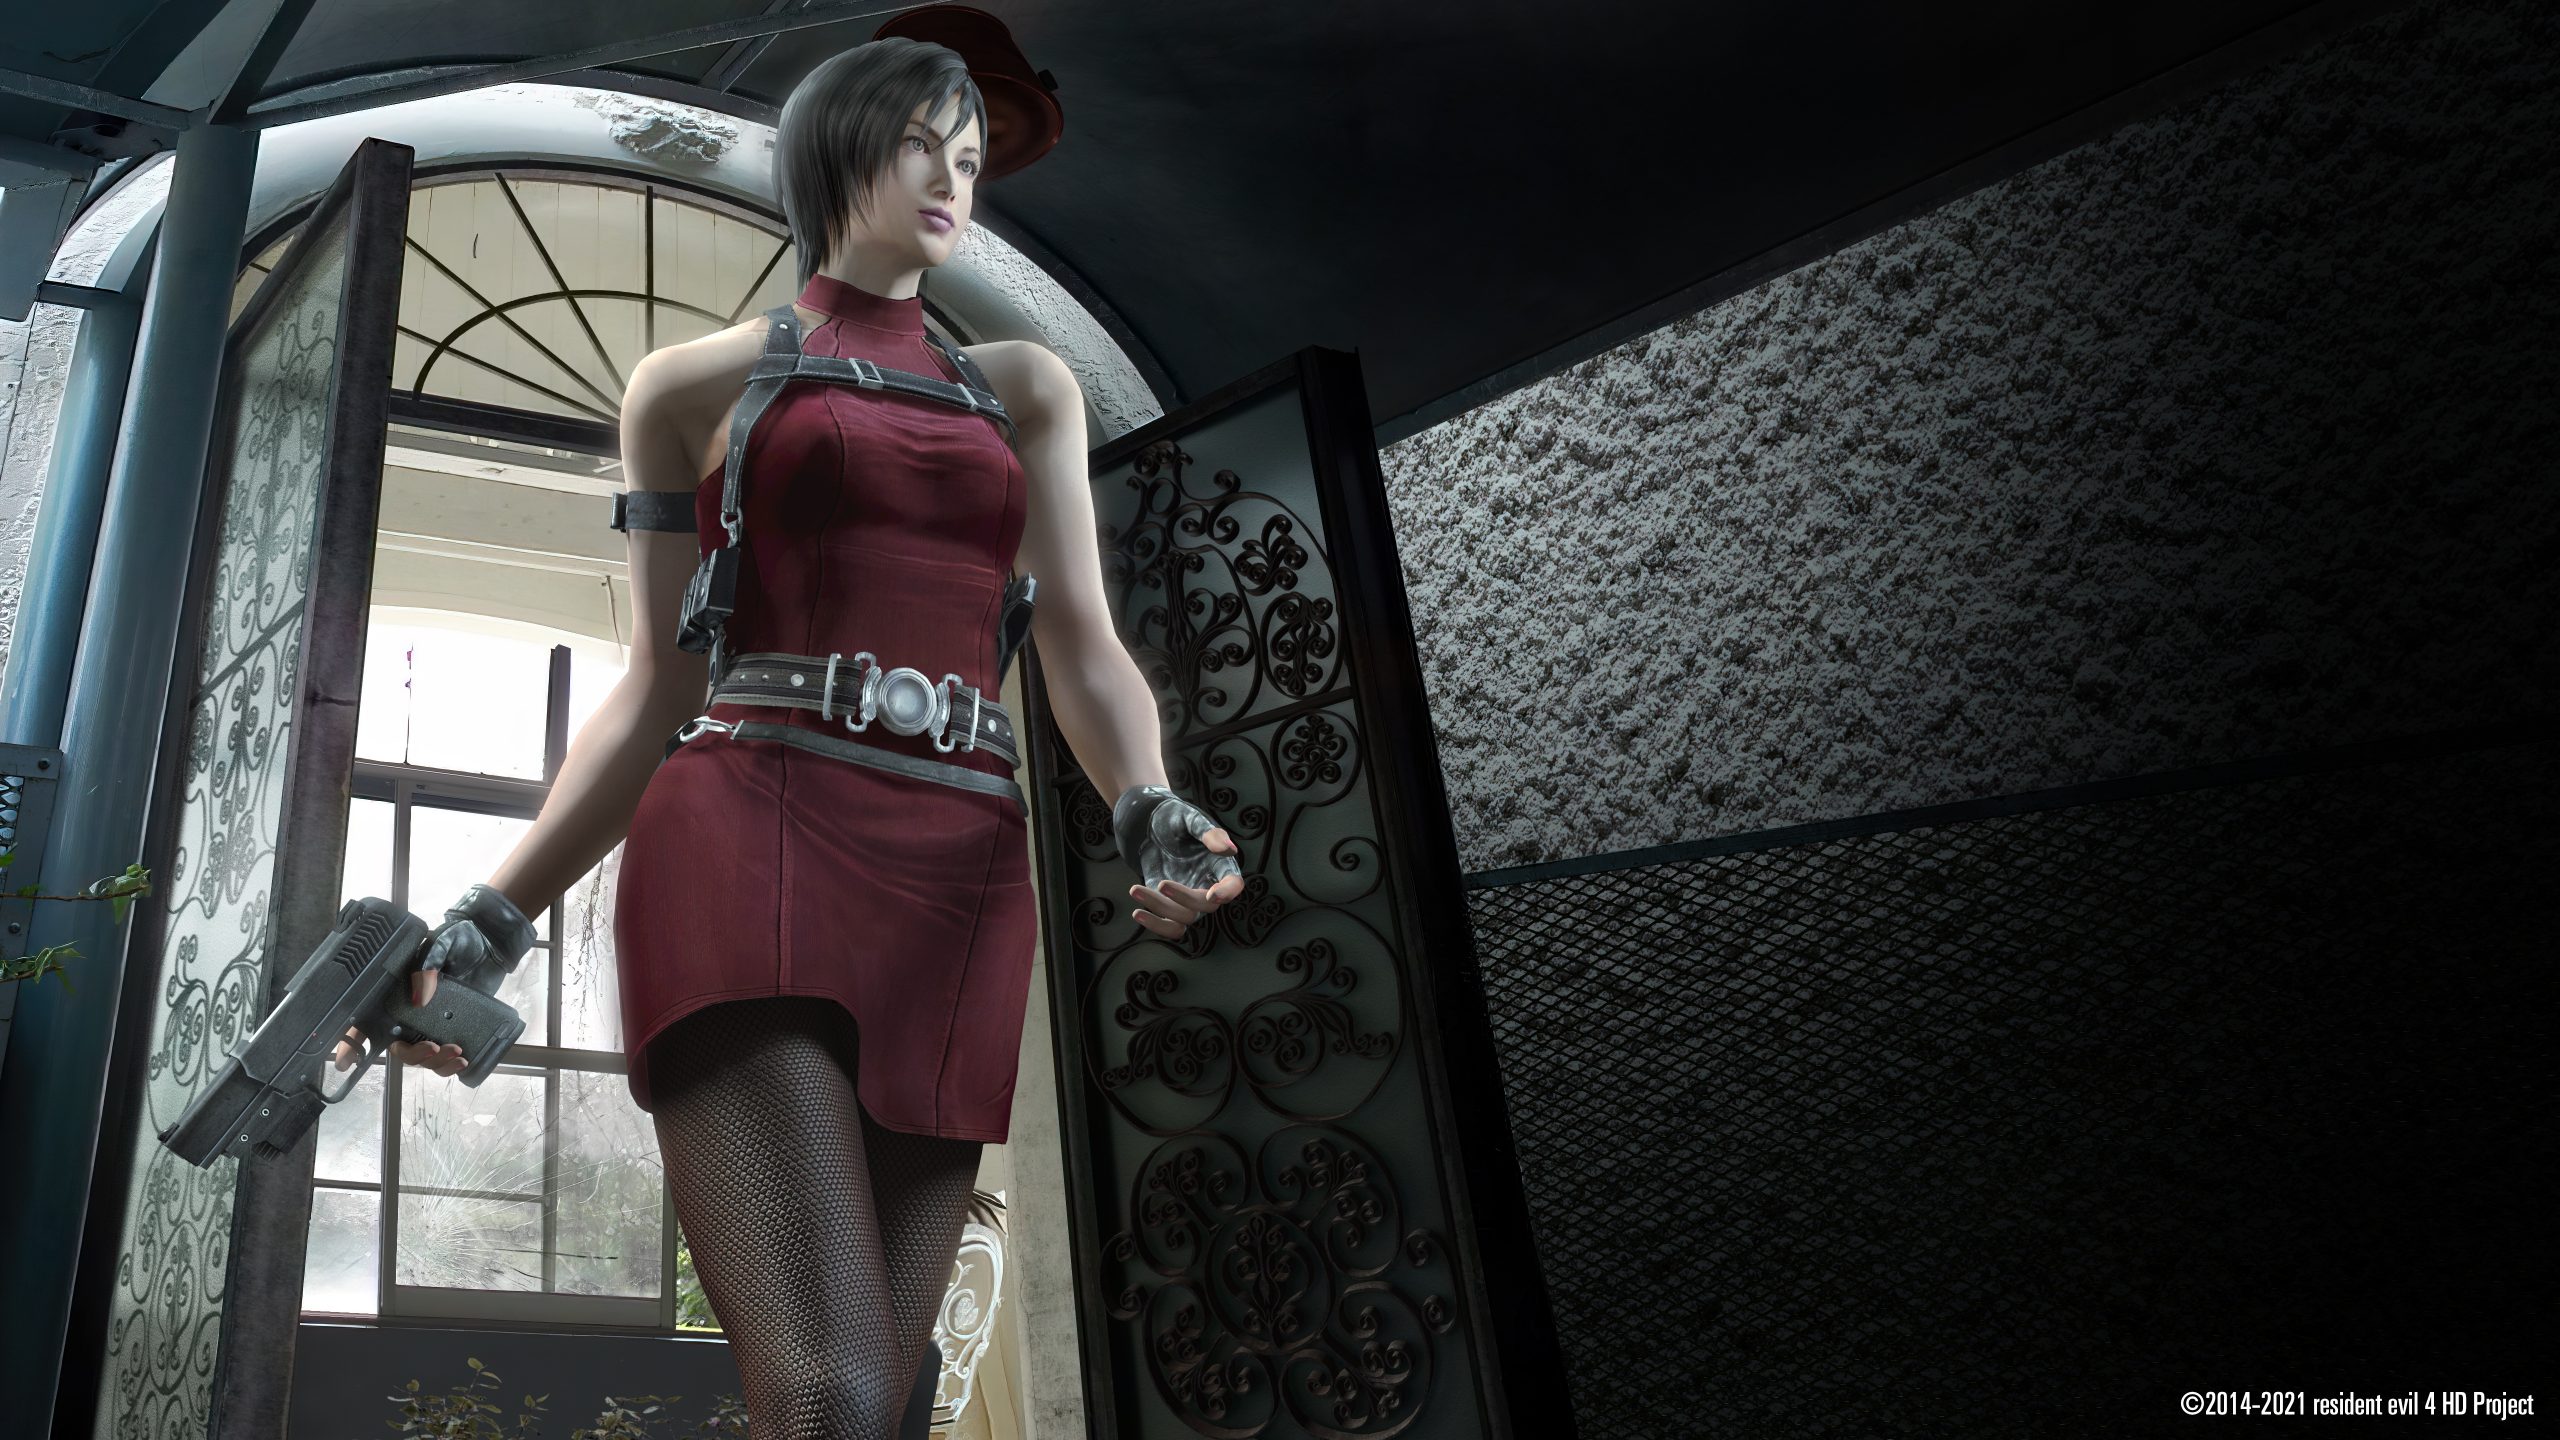 HD wallpaper: ada wong, Resident Evil, Resident Evil 4, Girl With